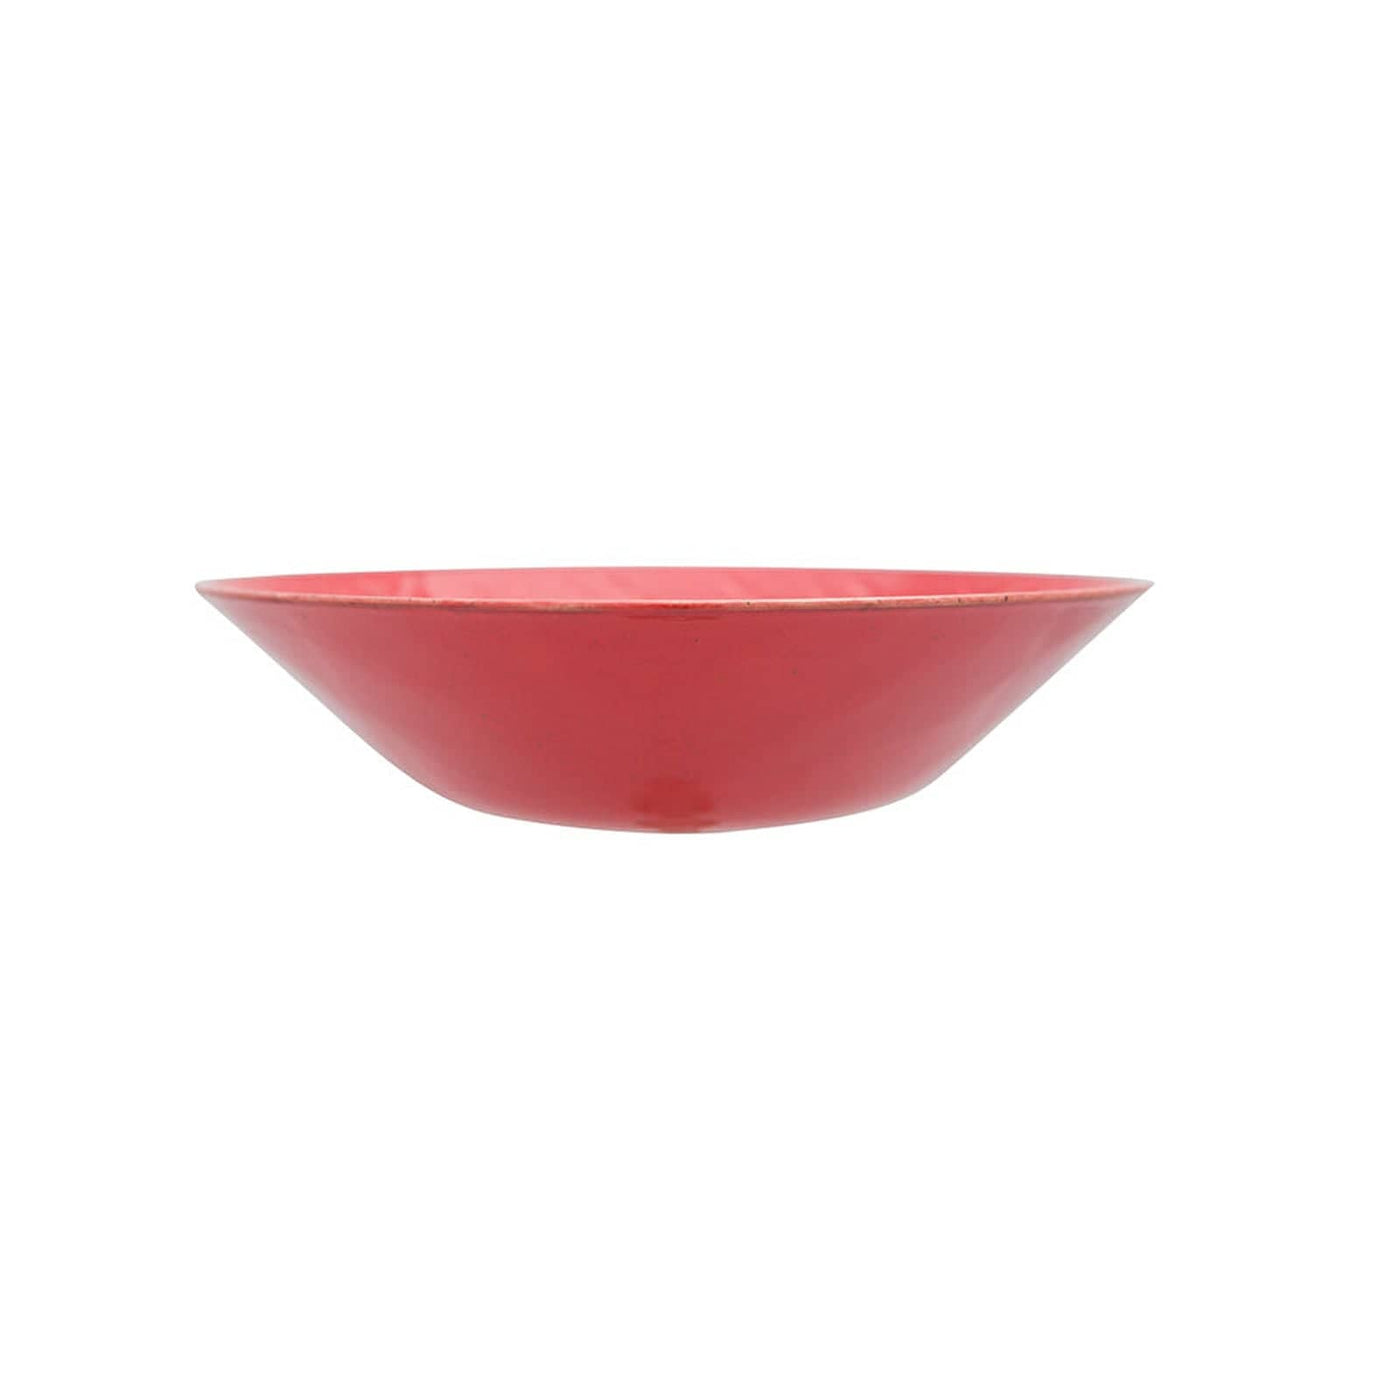 Christina Set of 6 Bowls, Red, 24 cm Bowls sazy.com